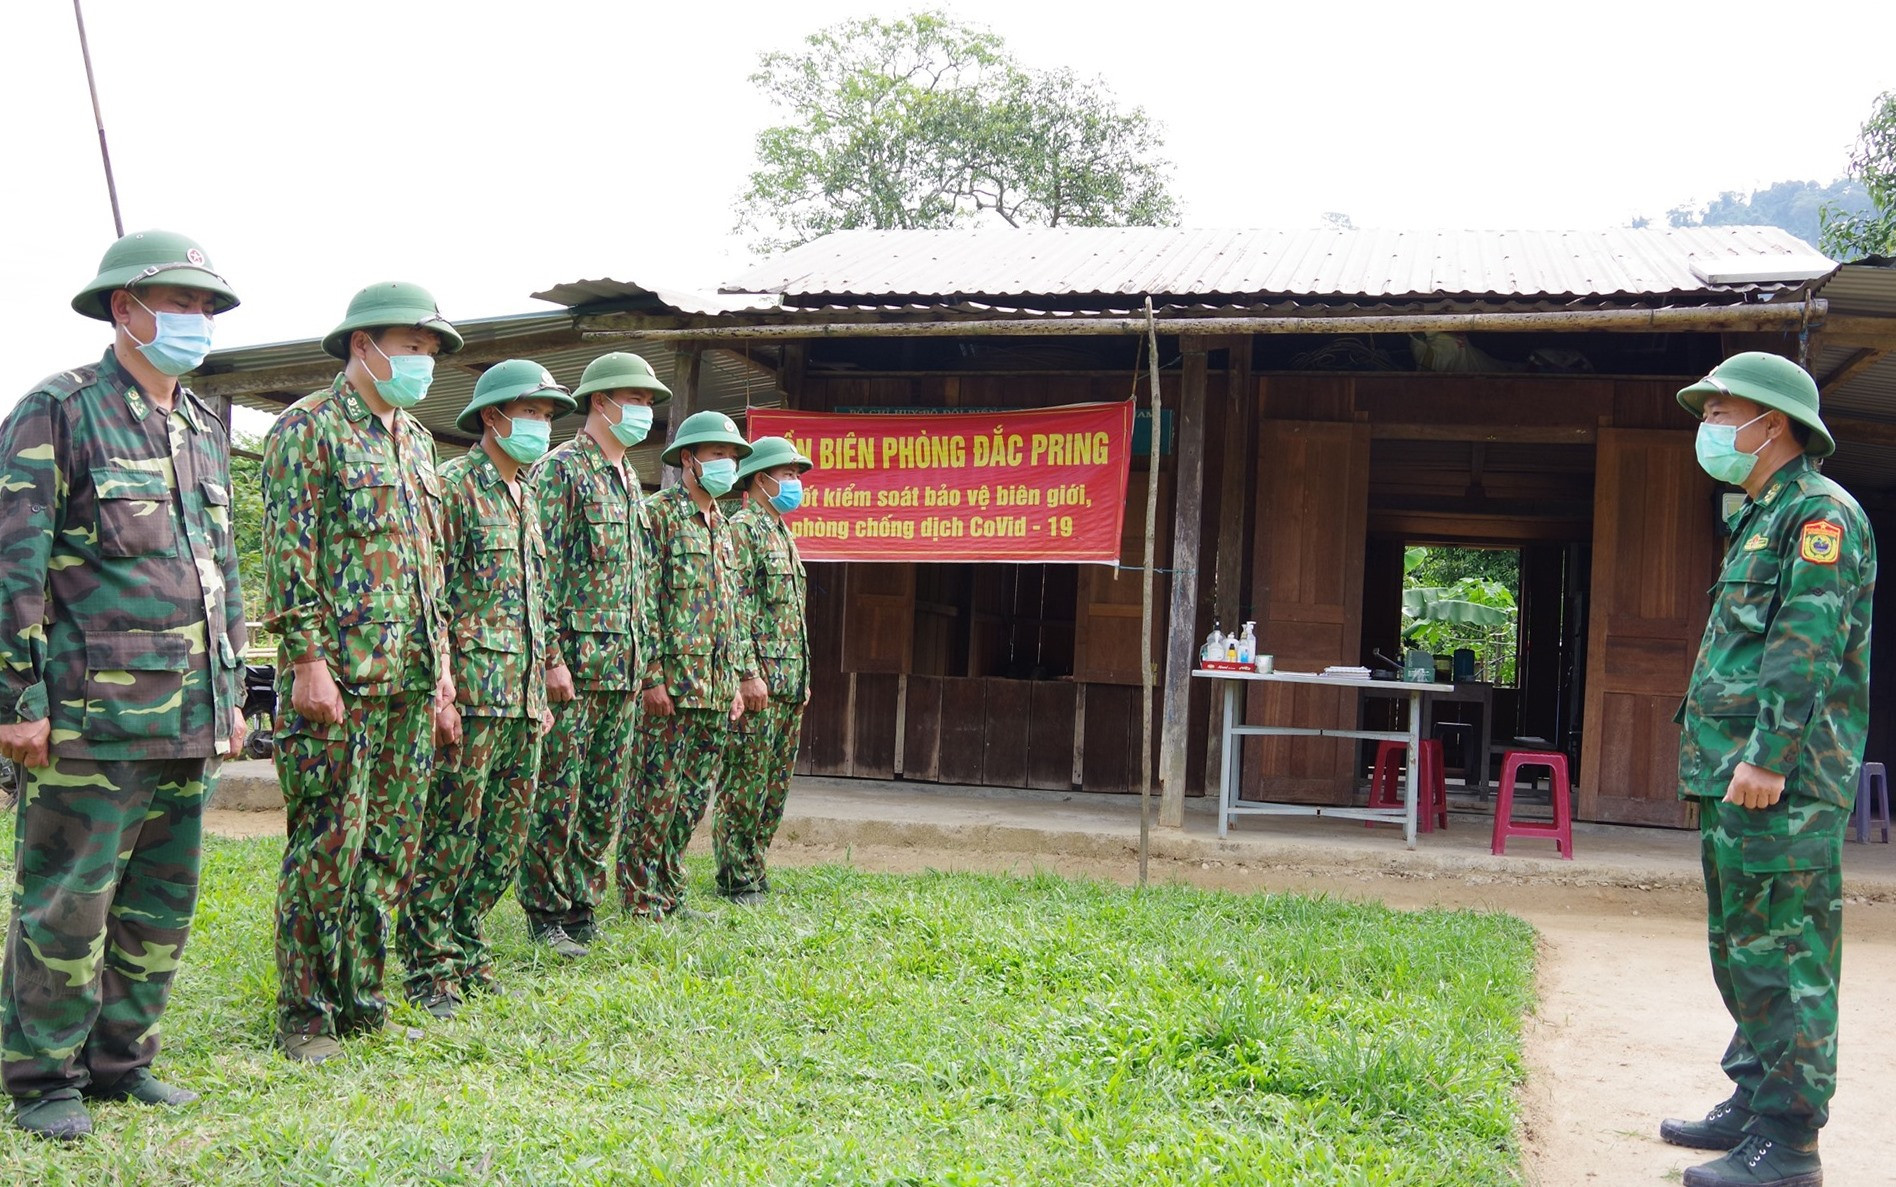 Đại tá Nguyễn Bá Thông – Chỉ huy trưởng BĐBP tỉnh giao nhiệm vụ cho lãnh đạo Đồn Biên phòng Đắc Pring và CBCS đang cắm chốt tại thôn Pêtapoóc. Ảnh: HUỲNH CHÍN